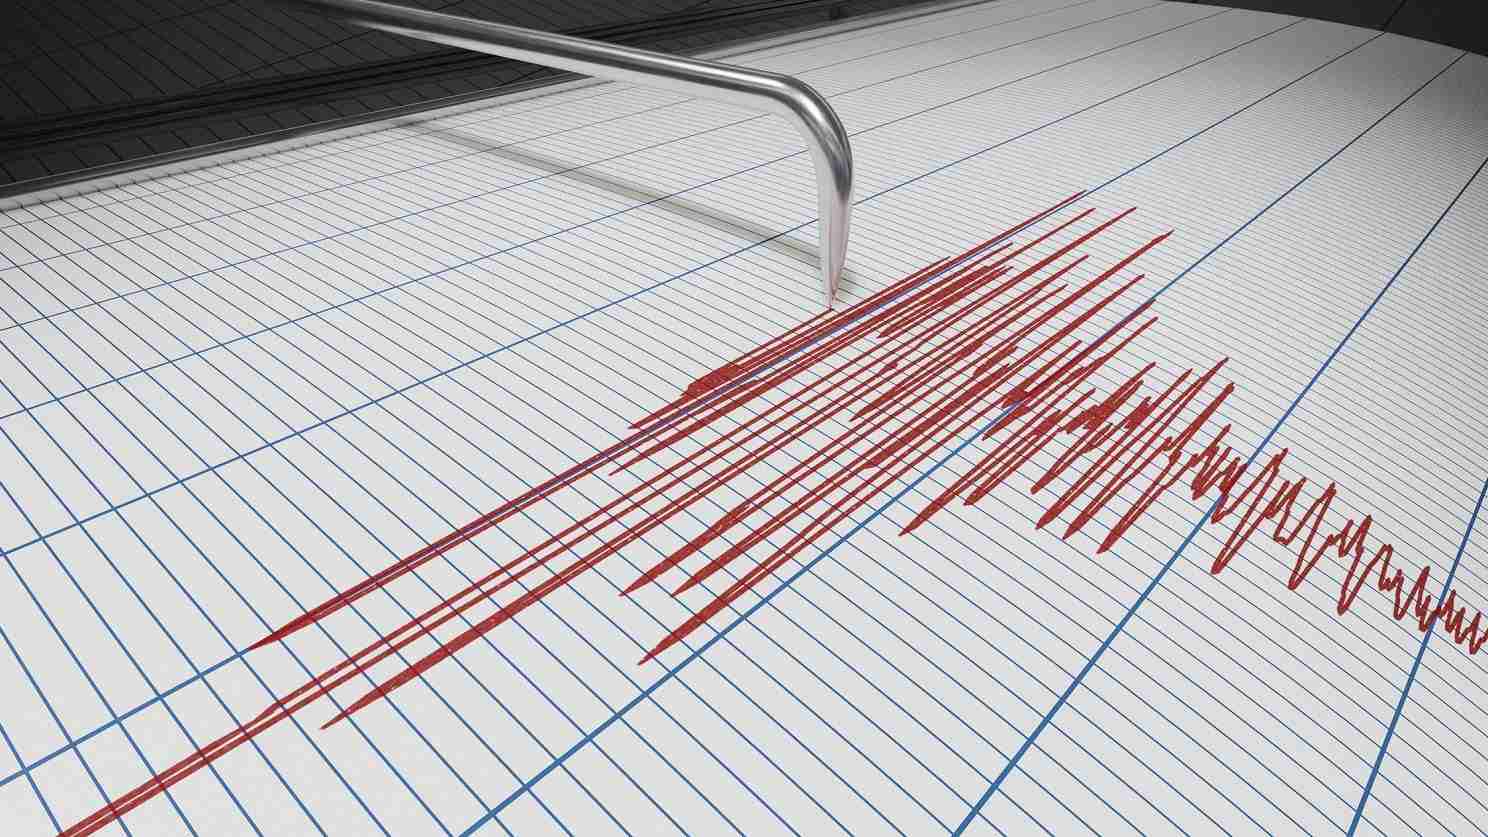 Scosse di terremoto nel catanese